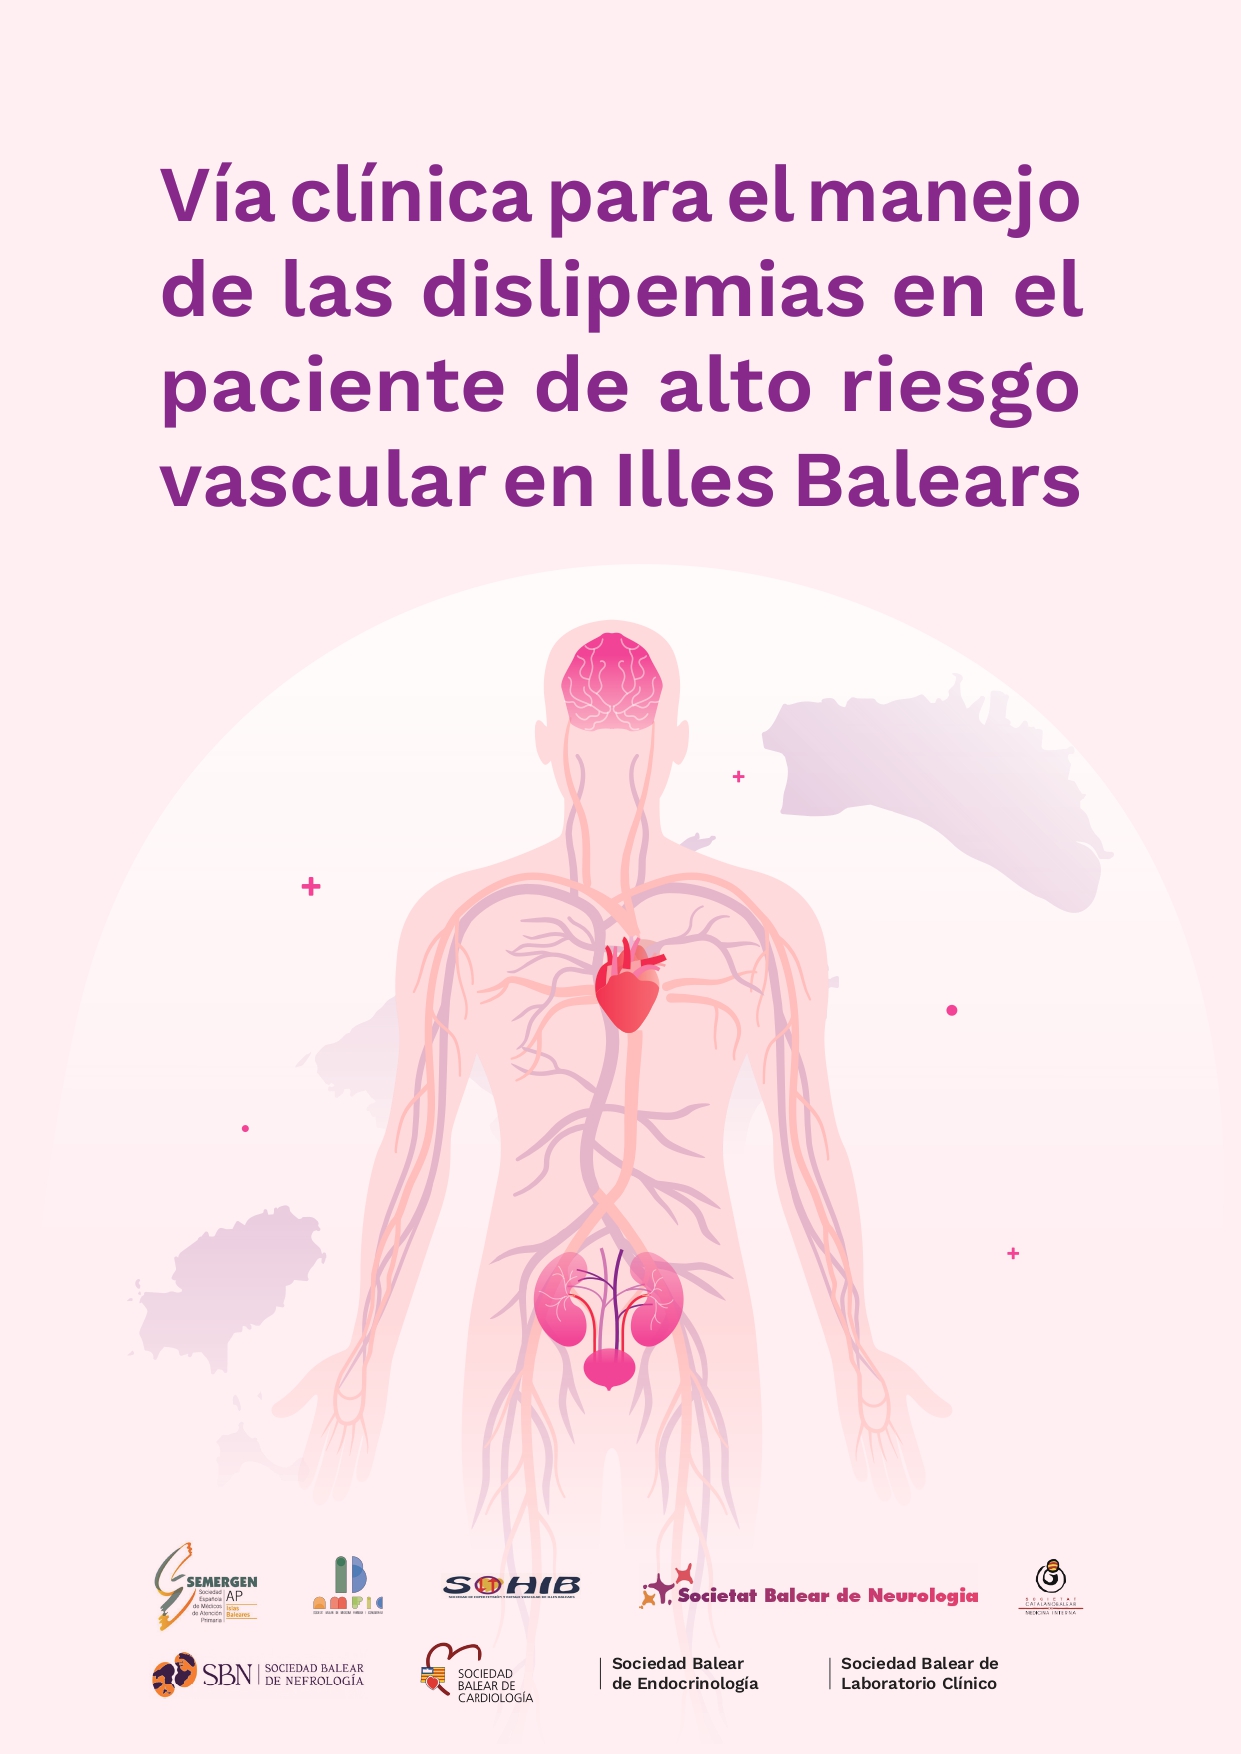 Guía para el manejo de las dislipemias en función del riesgo vascular de los pacientes en las islas baleares